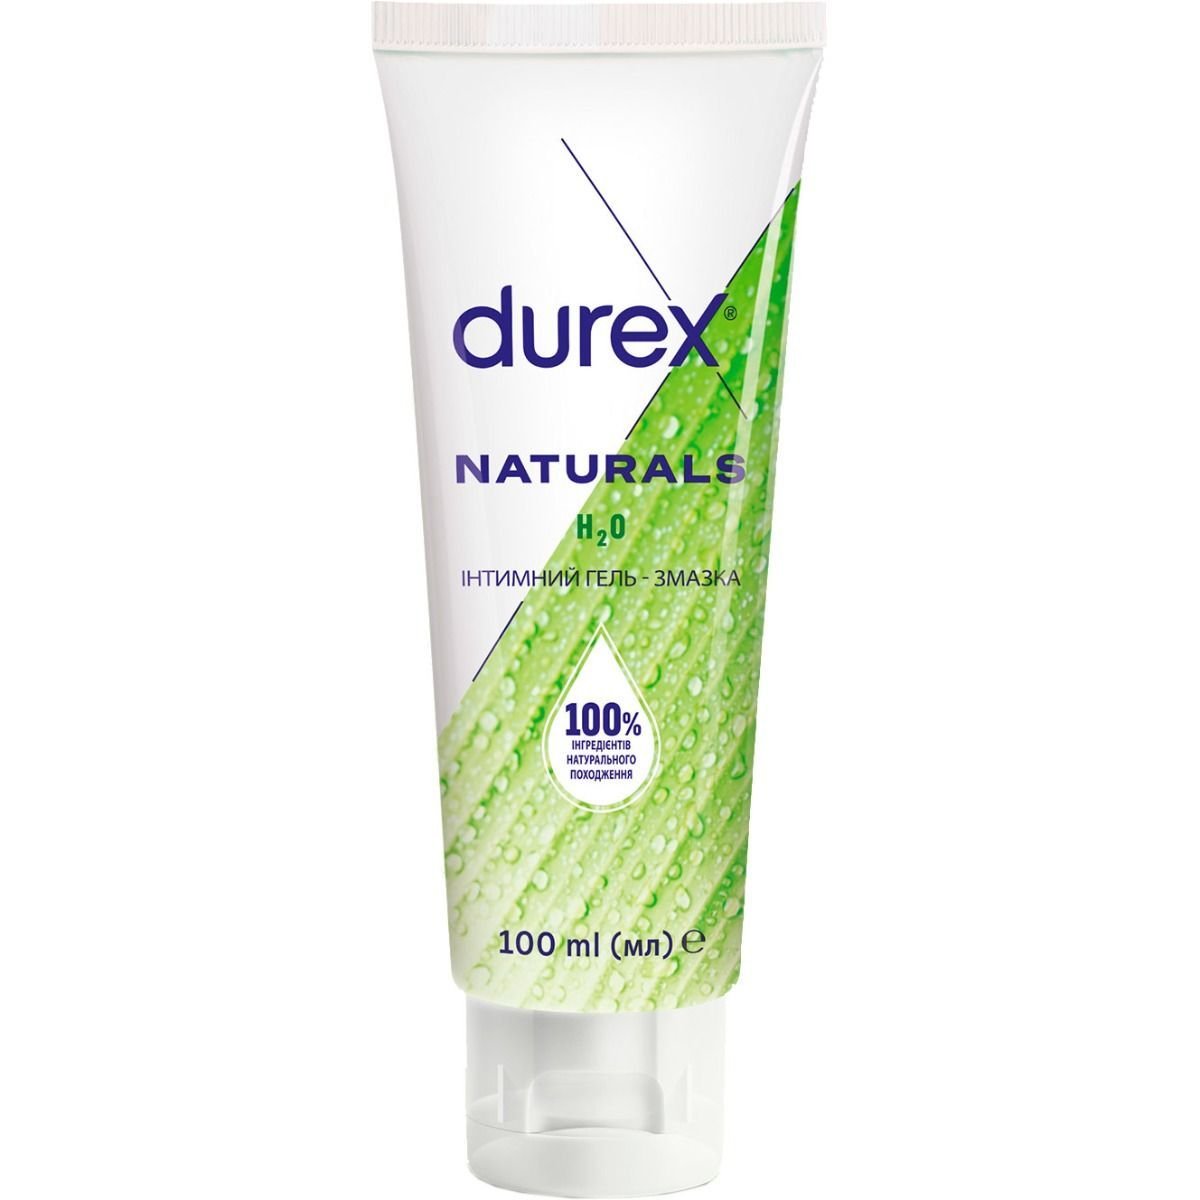 Інтимний гель-змазка Durex Naturals з натуральними інгредієнтами (лубрикант), 100 мл (3036592) - фото 1